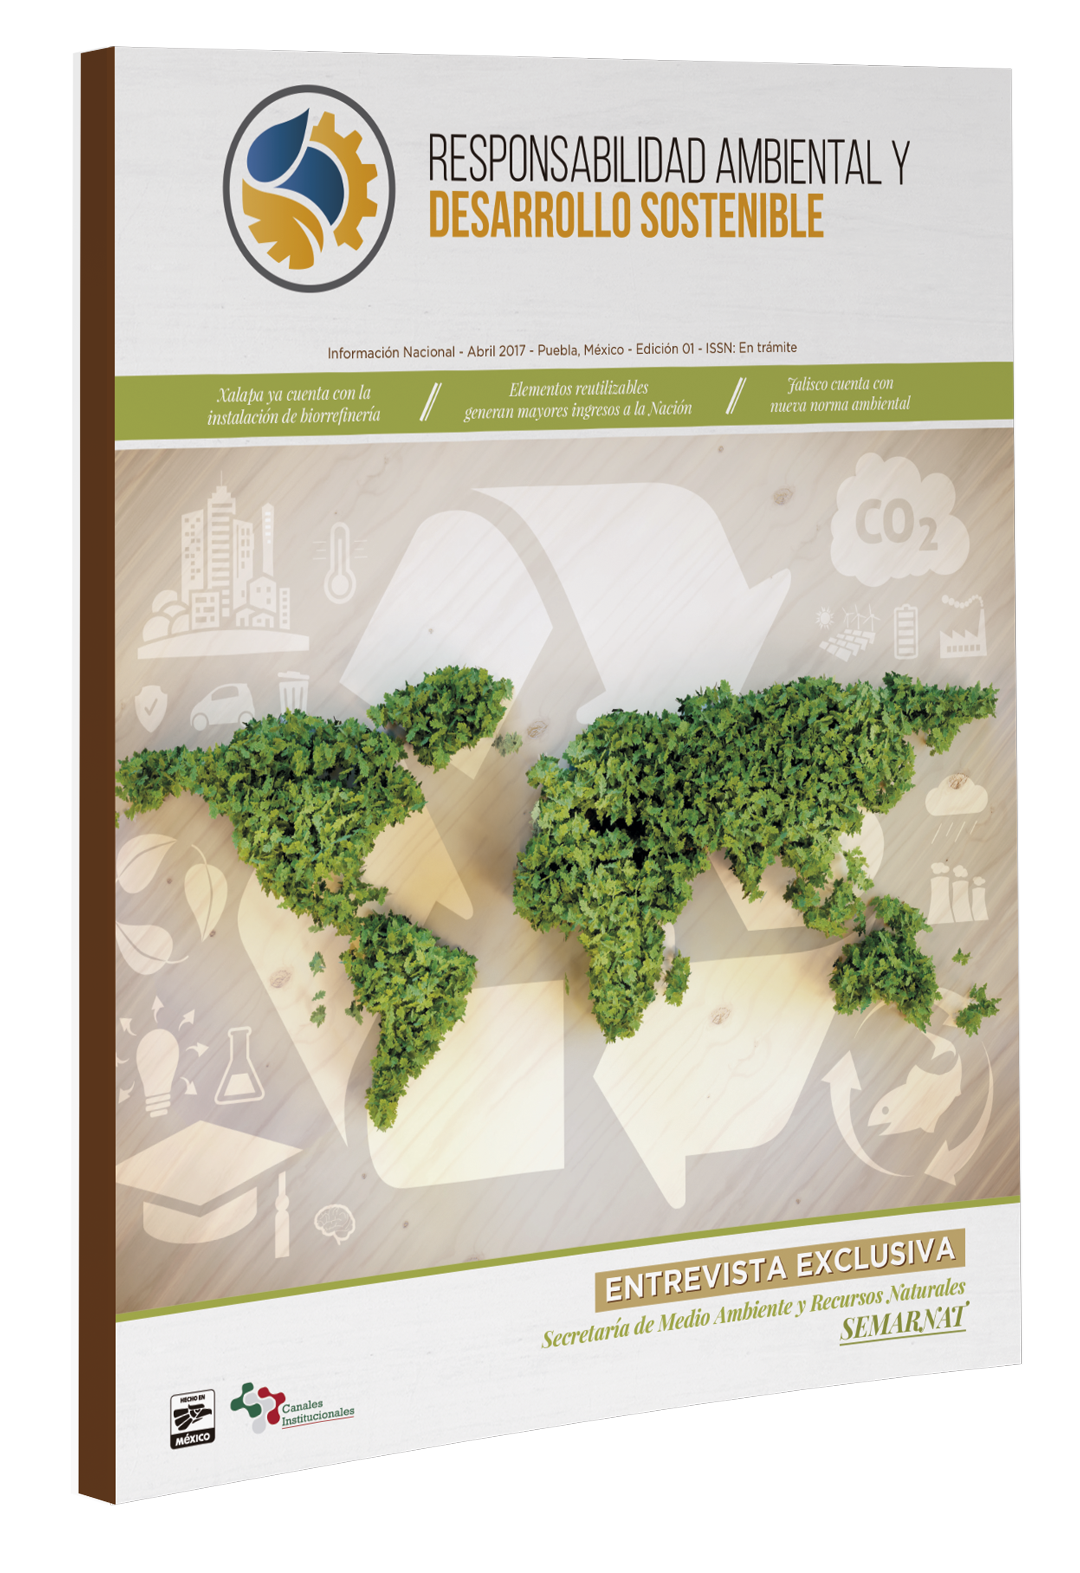 Responsabilidad ambiental y desarrollo sostenible 2017